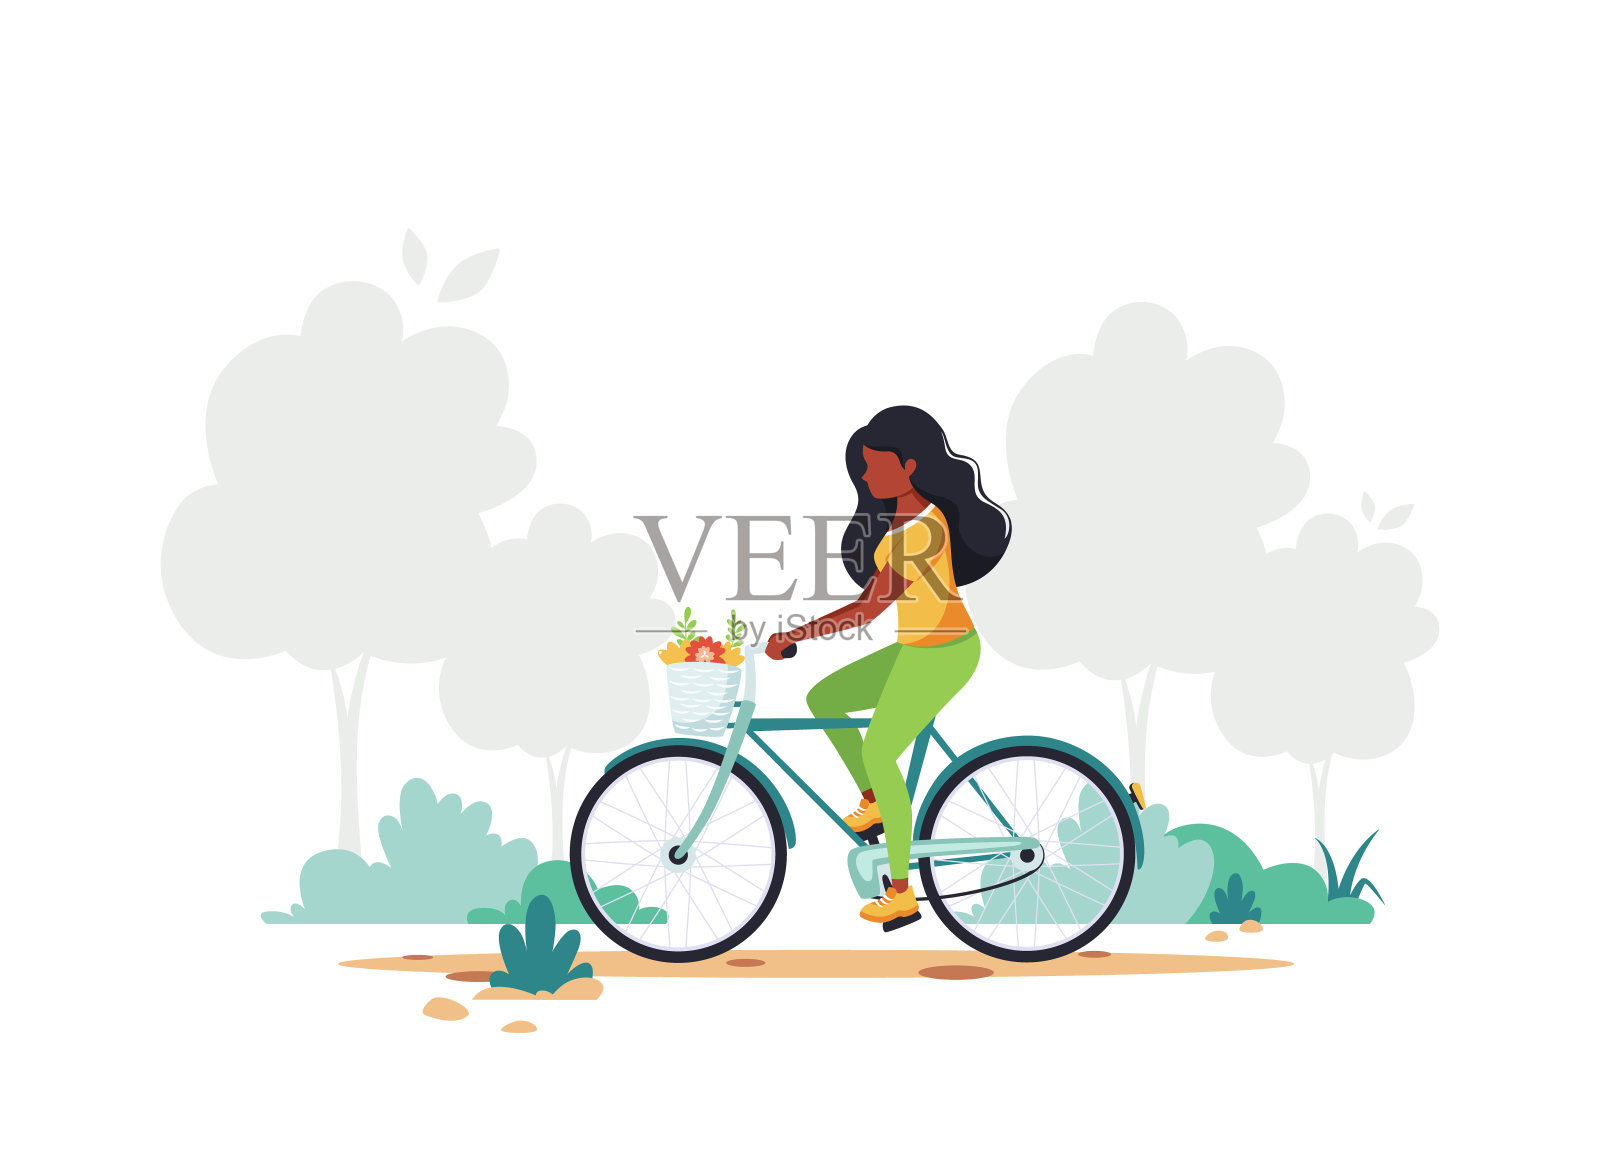 骑自行车的黑人妇女。健康生活方式、运动、户外活动理念。矢量图插画图片素材